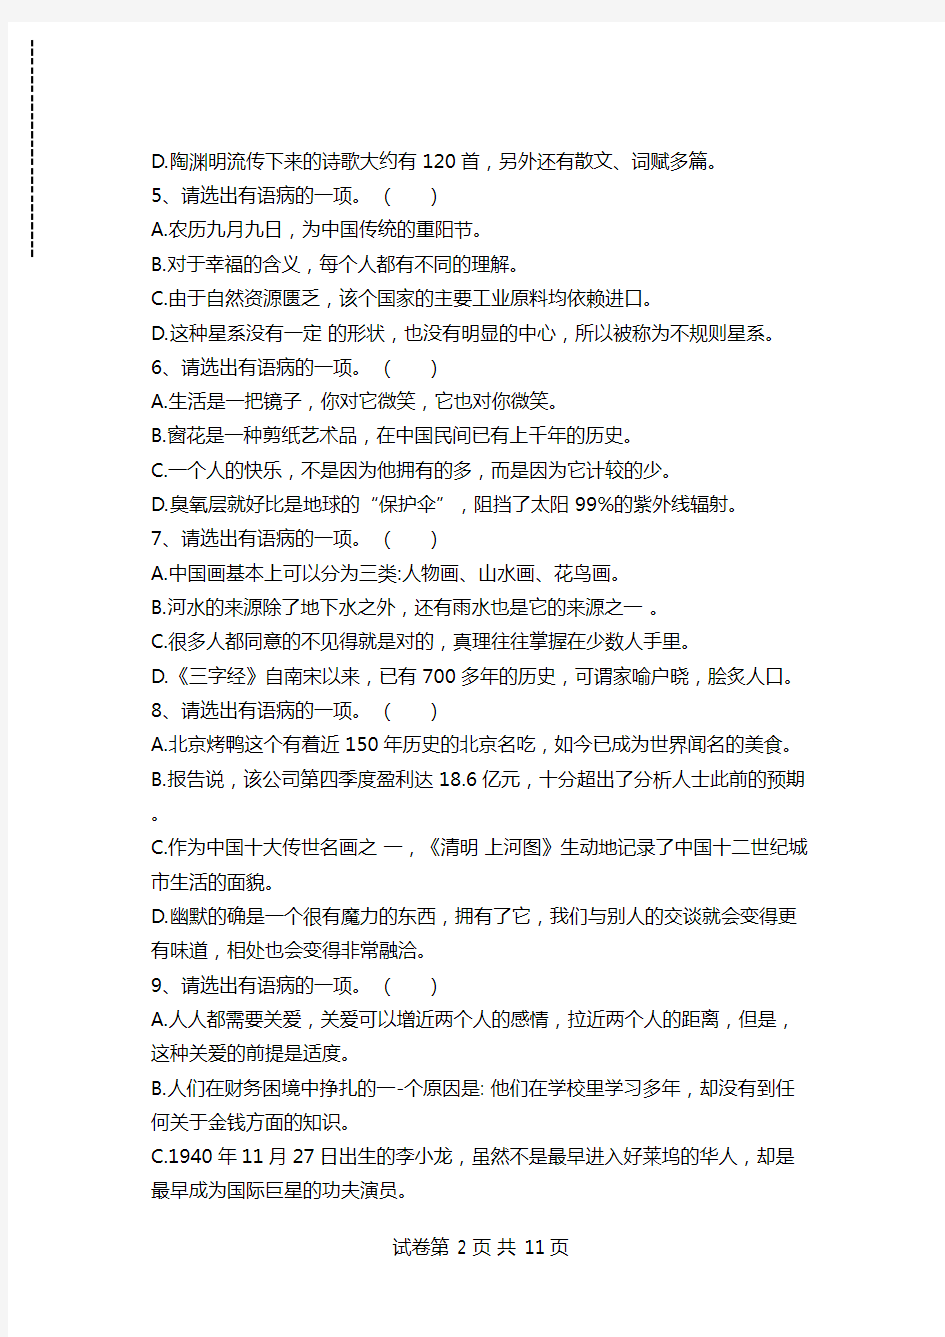 汉语水平考试新HSK6级考试真题(阅读部分)考试卷模拟考试题.doc